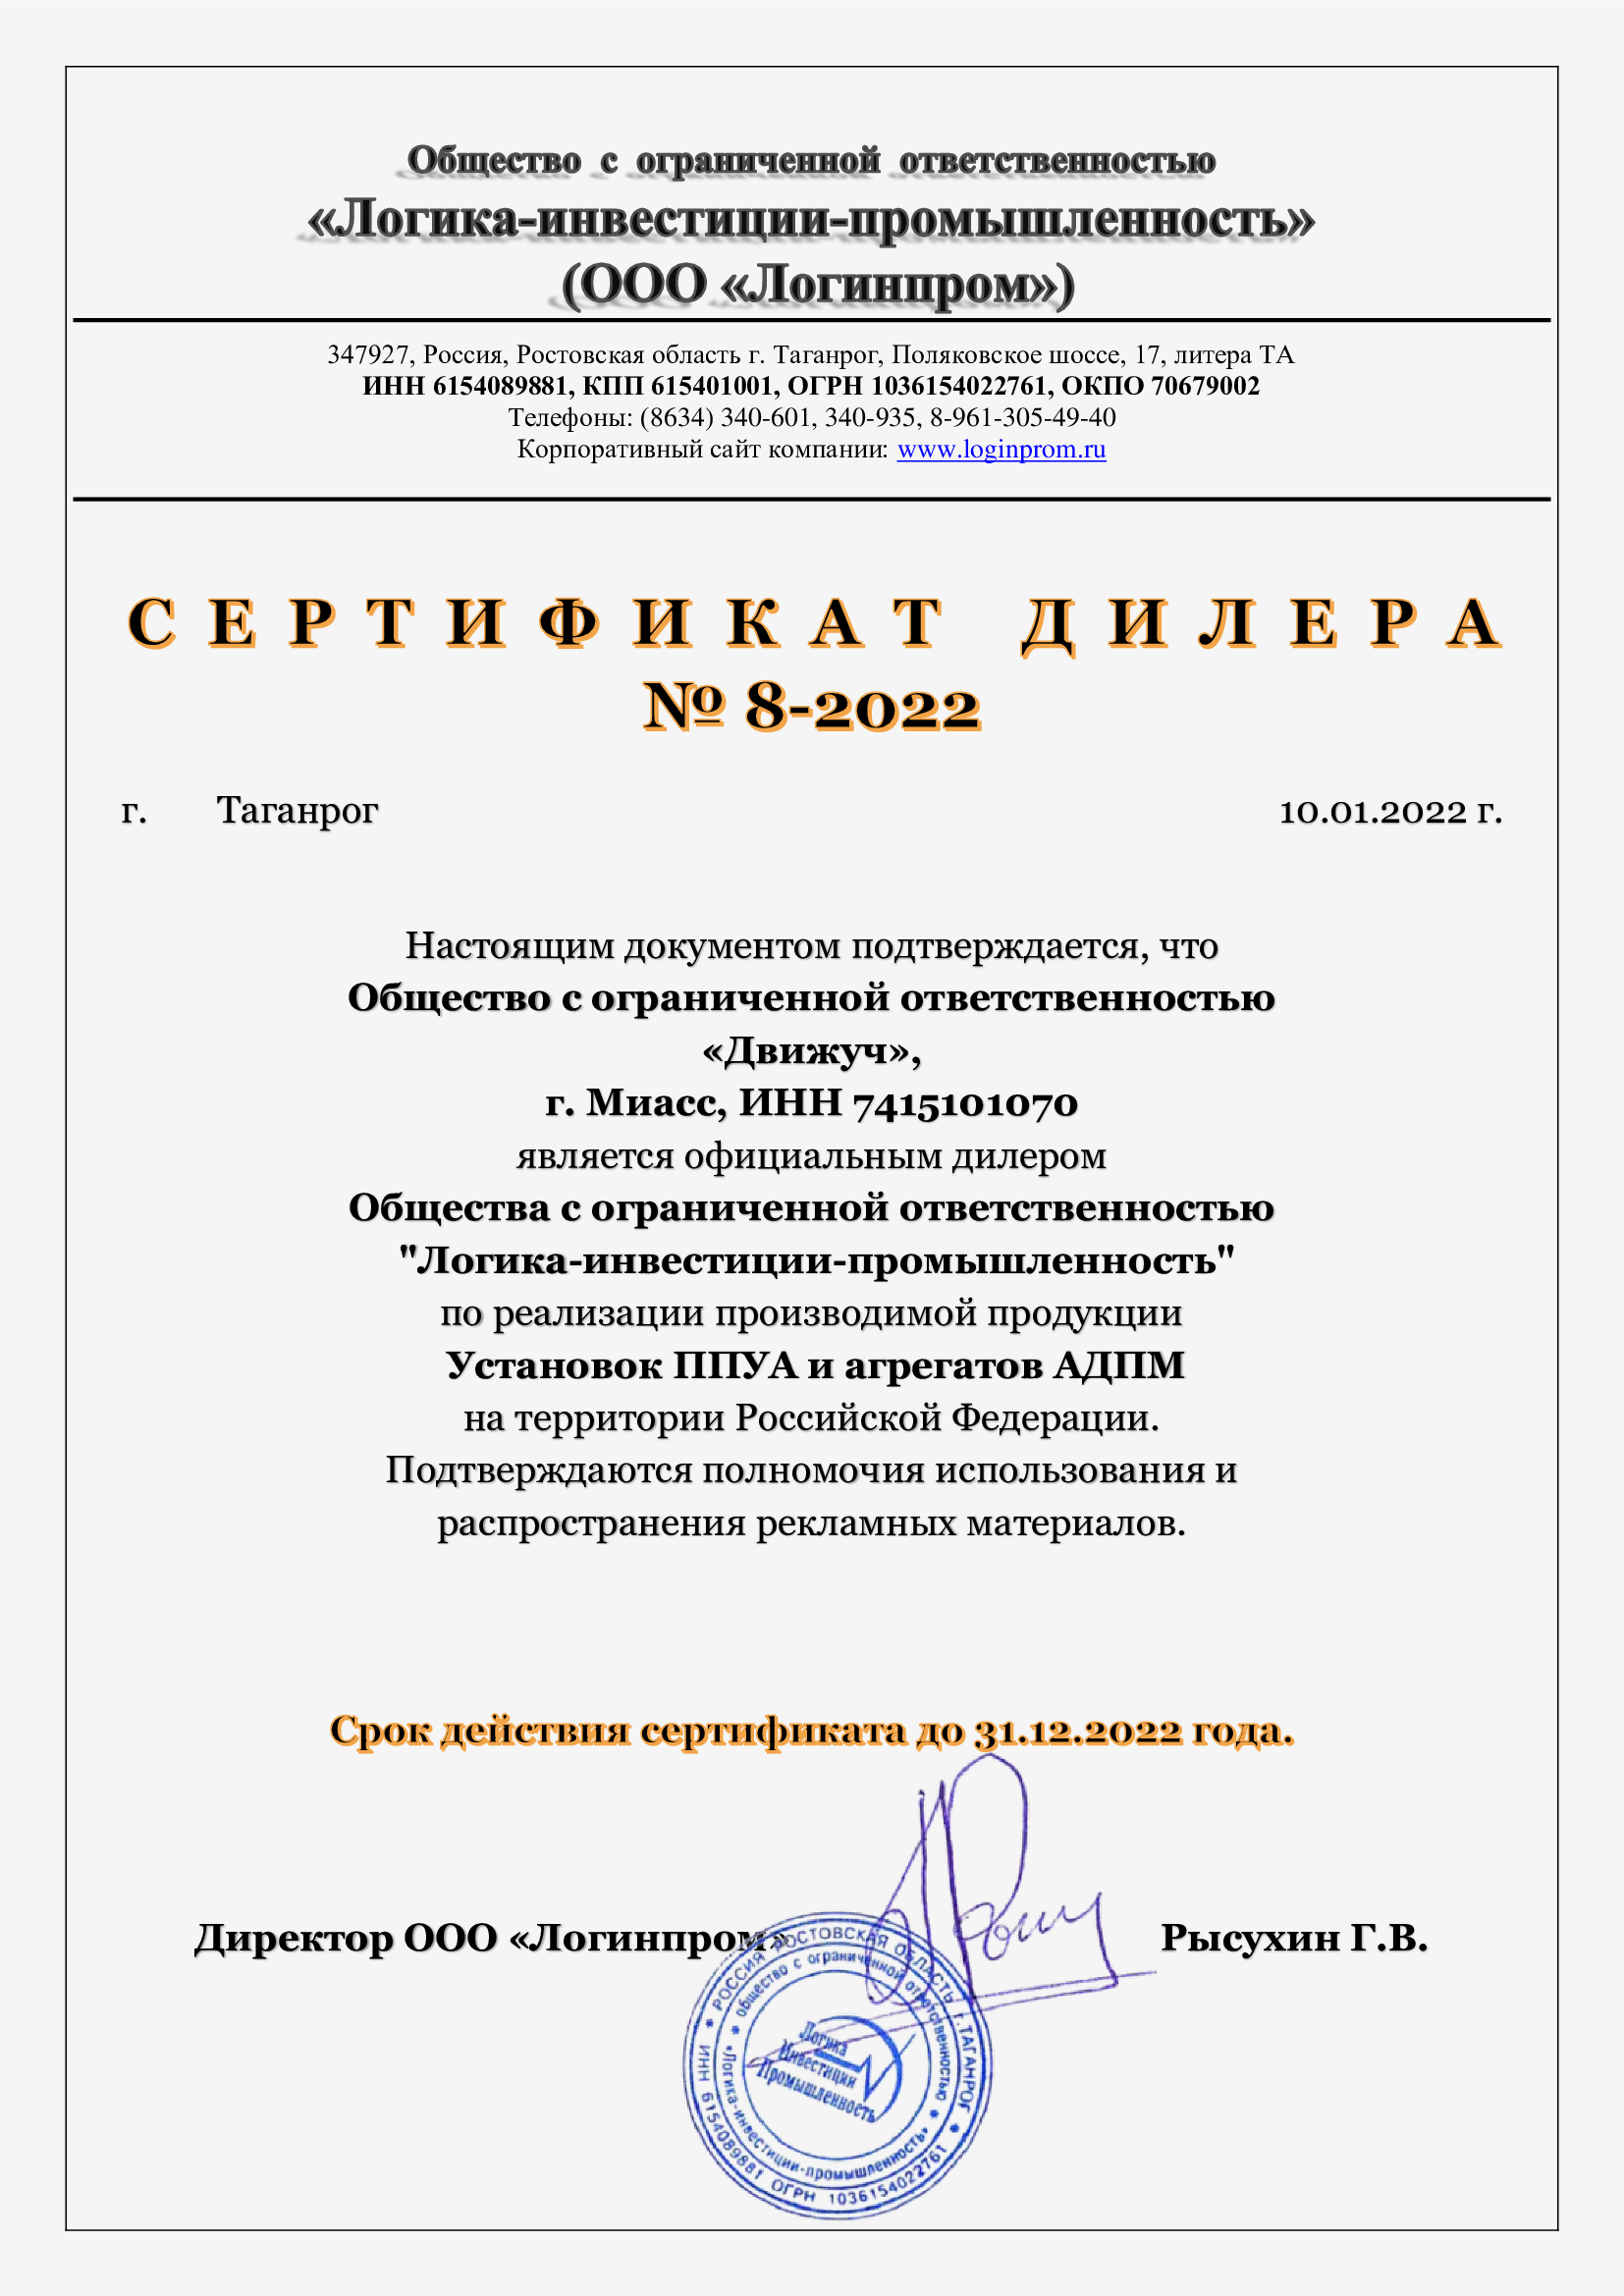 Сертификат официального дилера ООО Логинпром